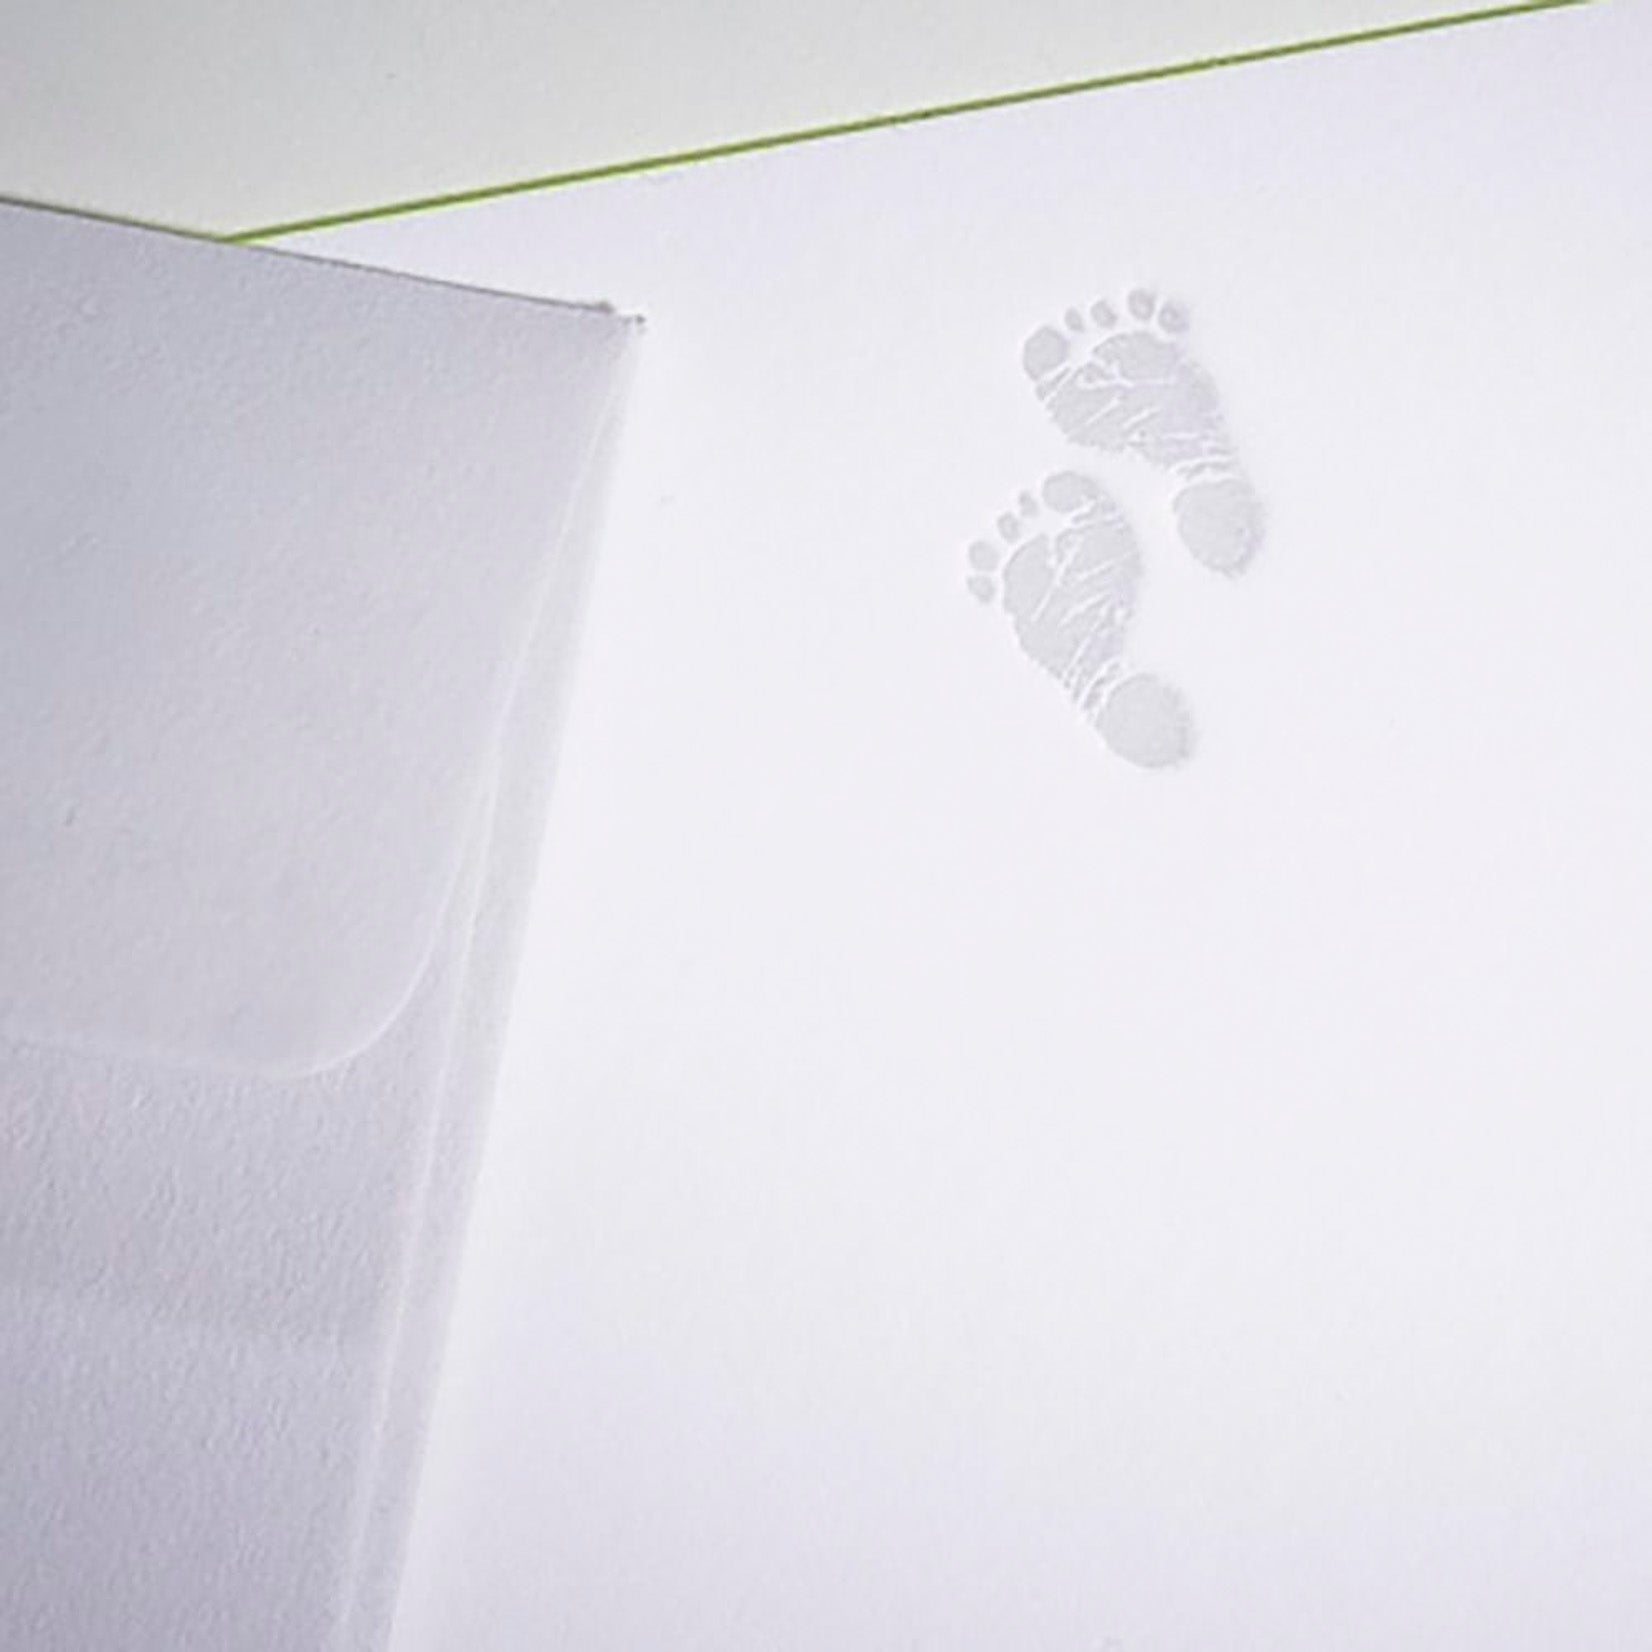 Gmund Tegernsee Grußkarte Icon Karte Baby Fussabdruck Geburt Glückwünsche